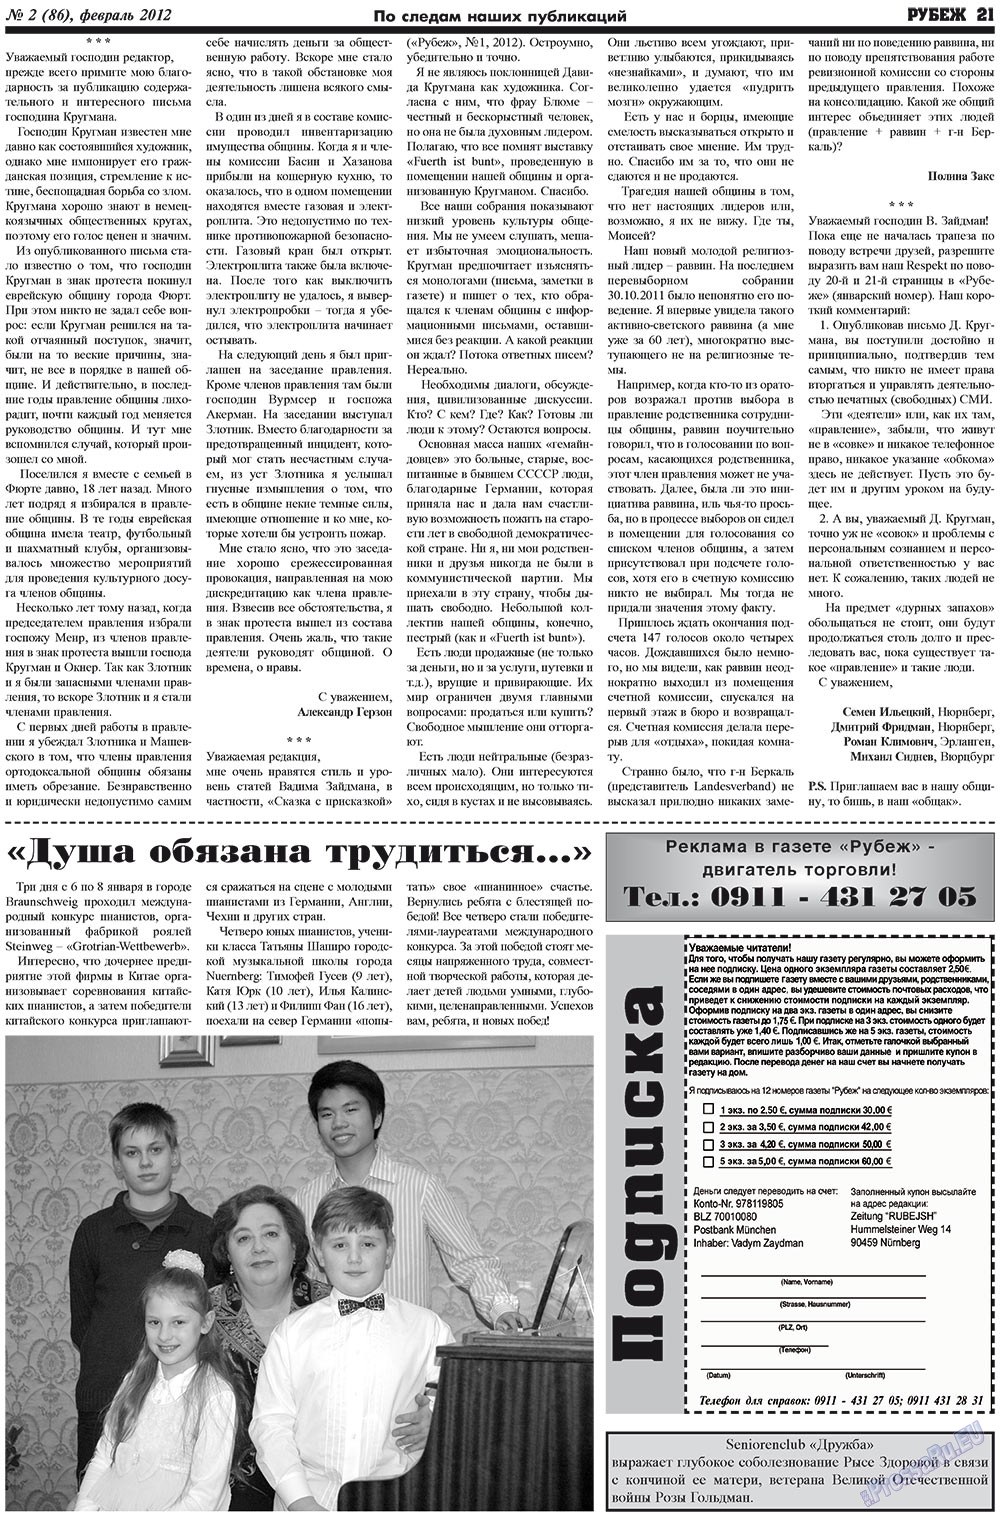 Рубеж (газета). 2012 год, номер 2, стр. 21